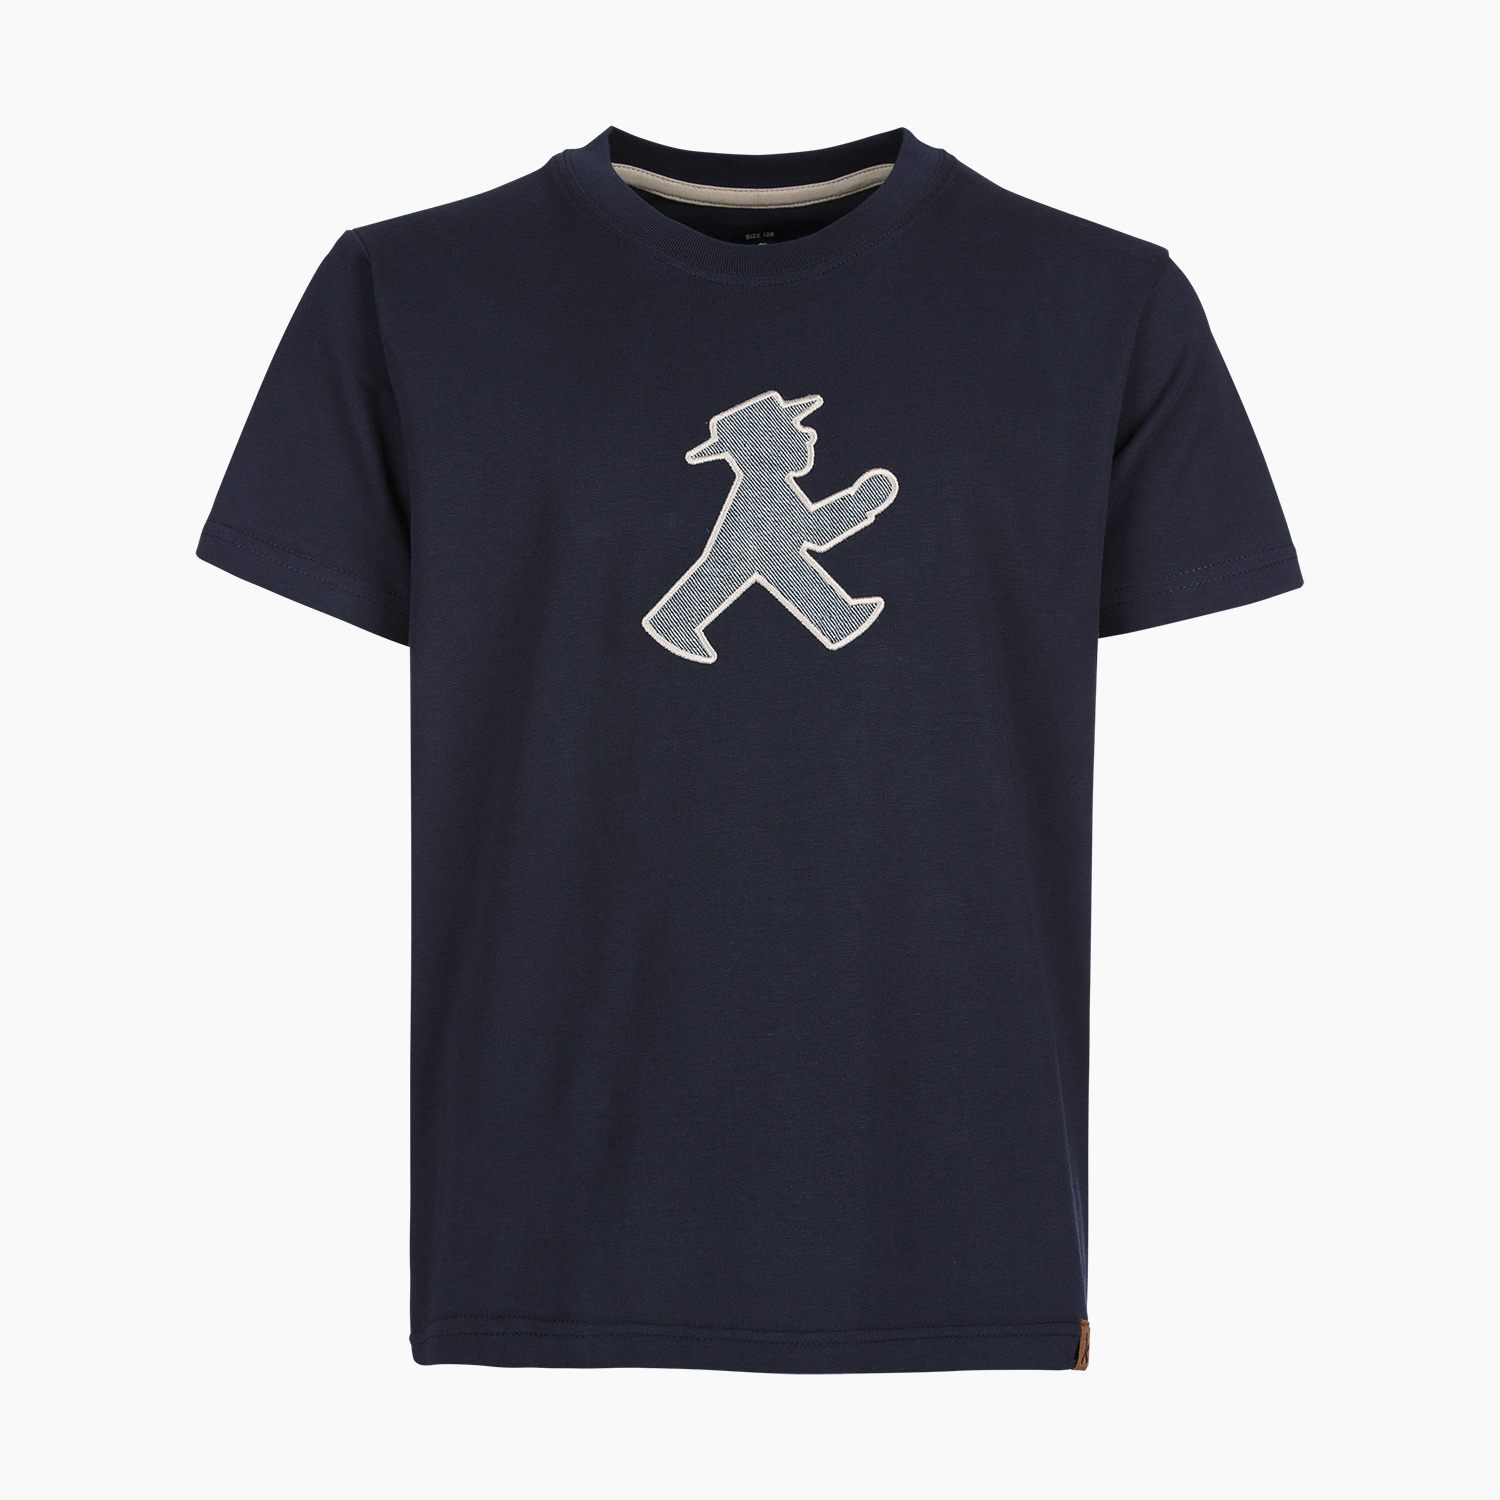 AUFSCHNEIDERLEIN / Kinder T-Shirt